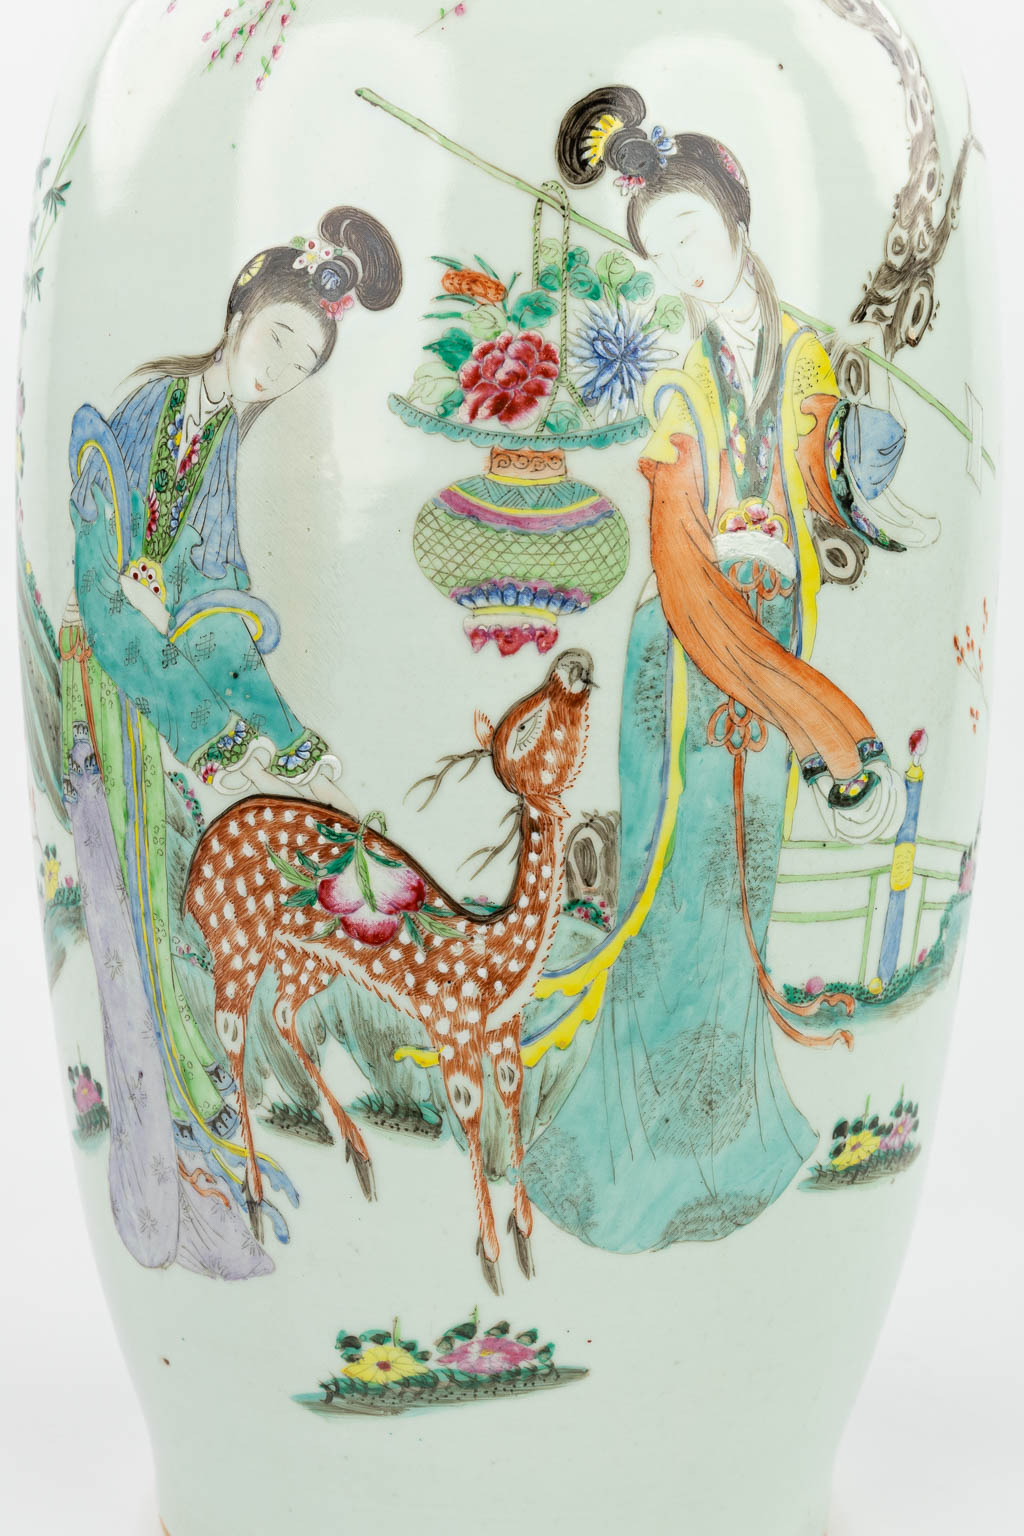 Een Chinese vaas gemaakt uit porselein en versierd met hofdames en een hert. (H:57cm)